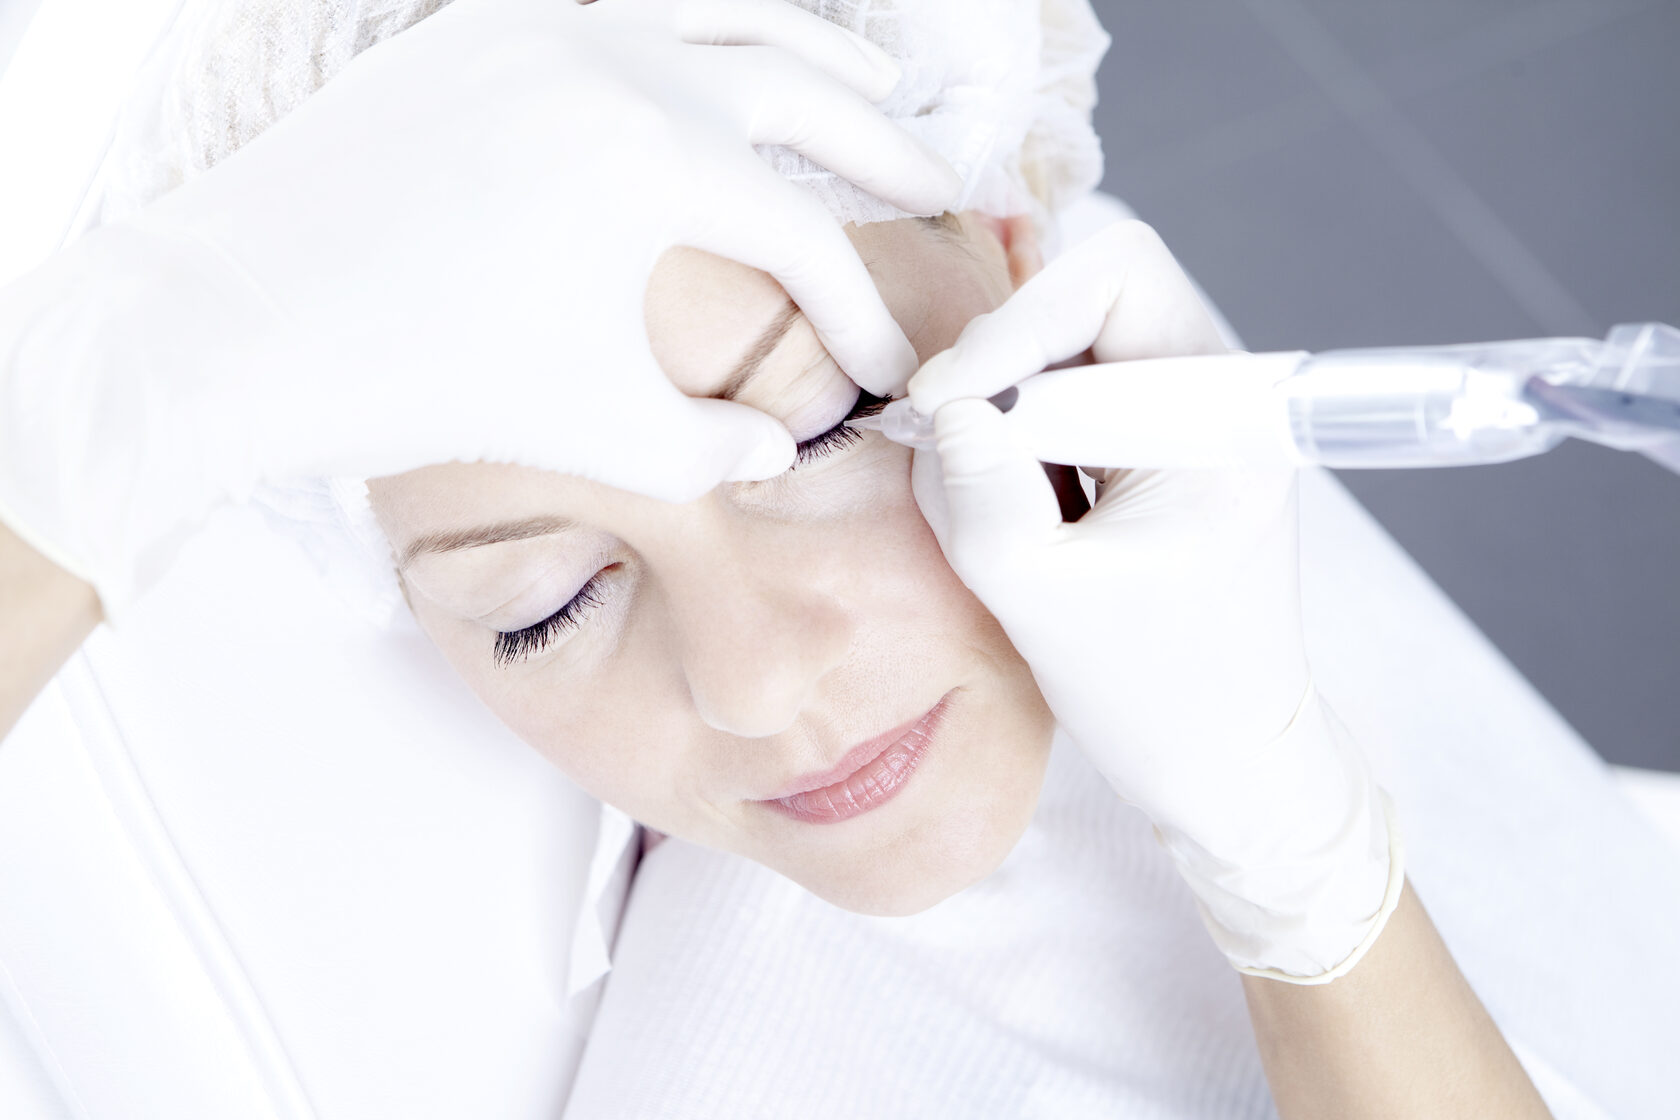 Уход после процедуры татуажа век: рекомендации, как ухаживать за перманентным макияжем глаз